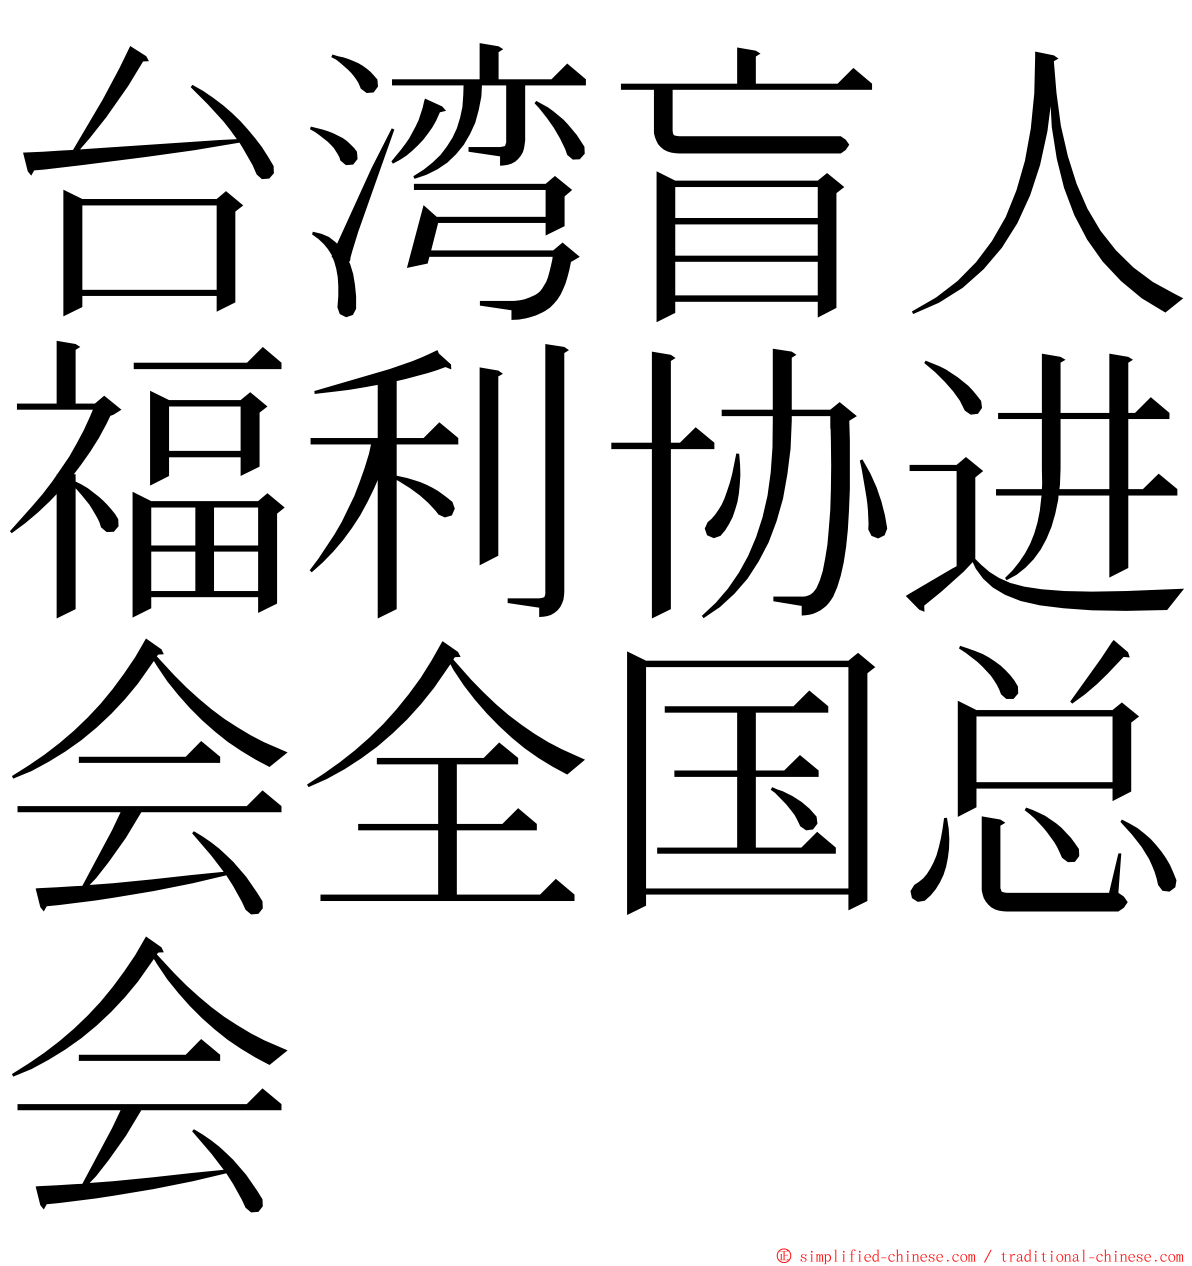 台湾盲人福利协进会全国总会 ming font